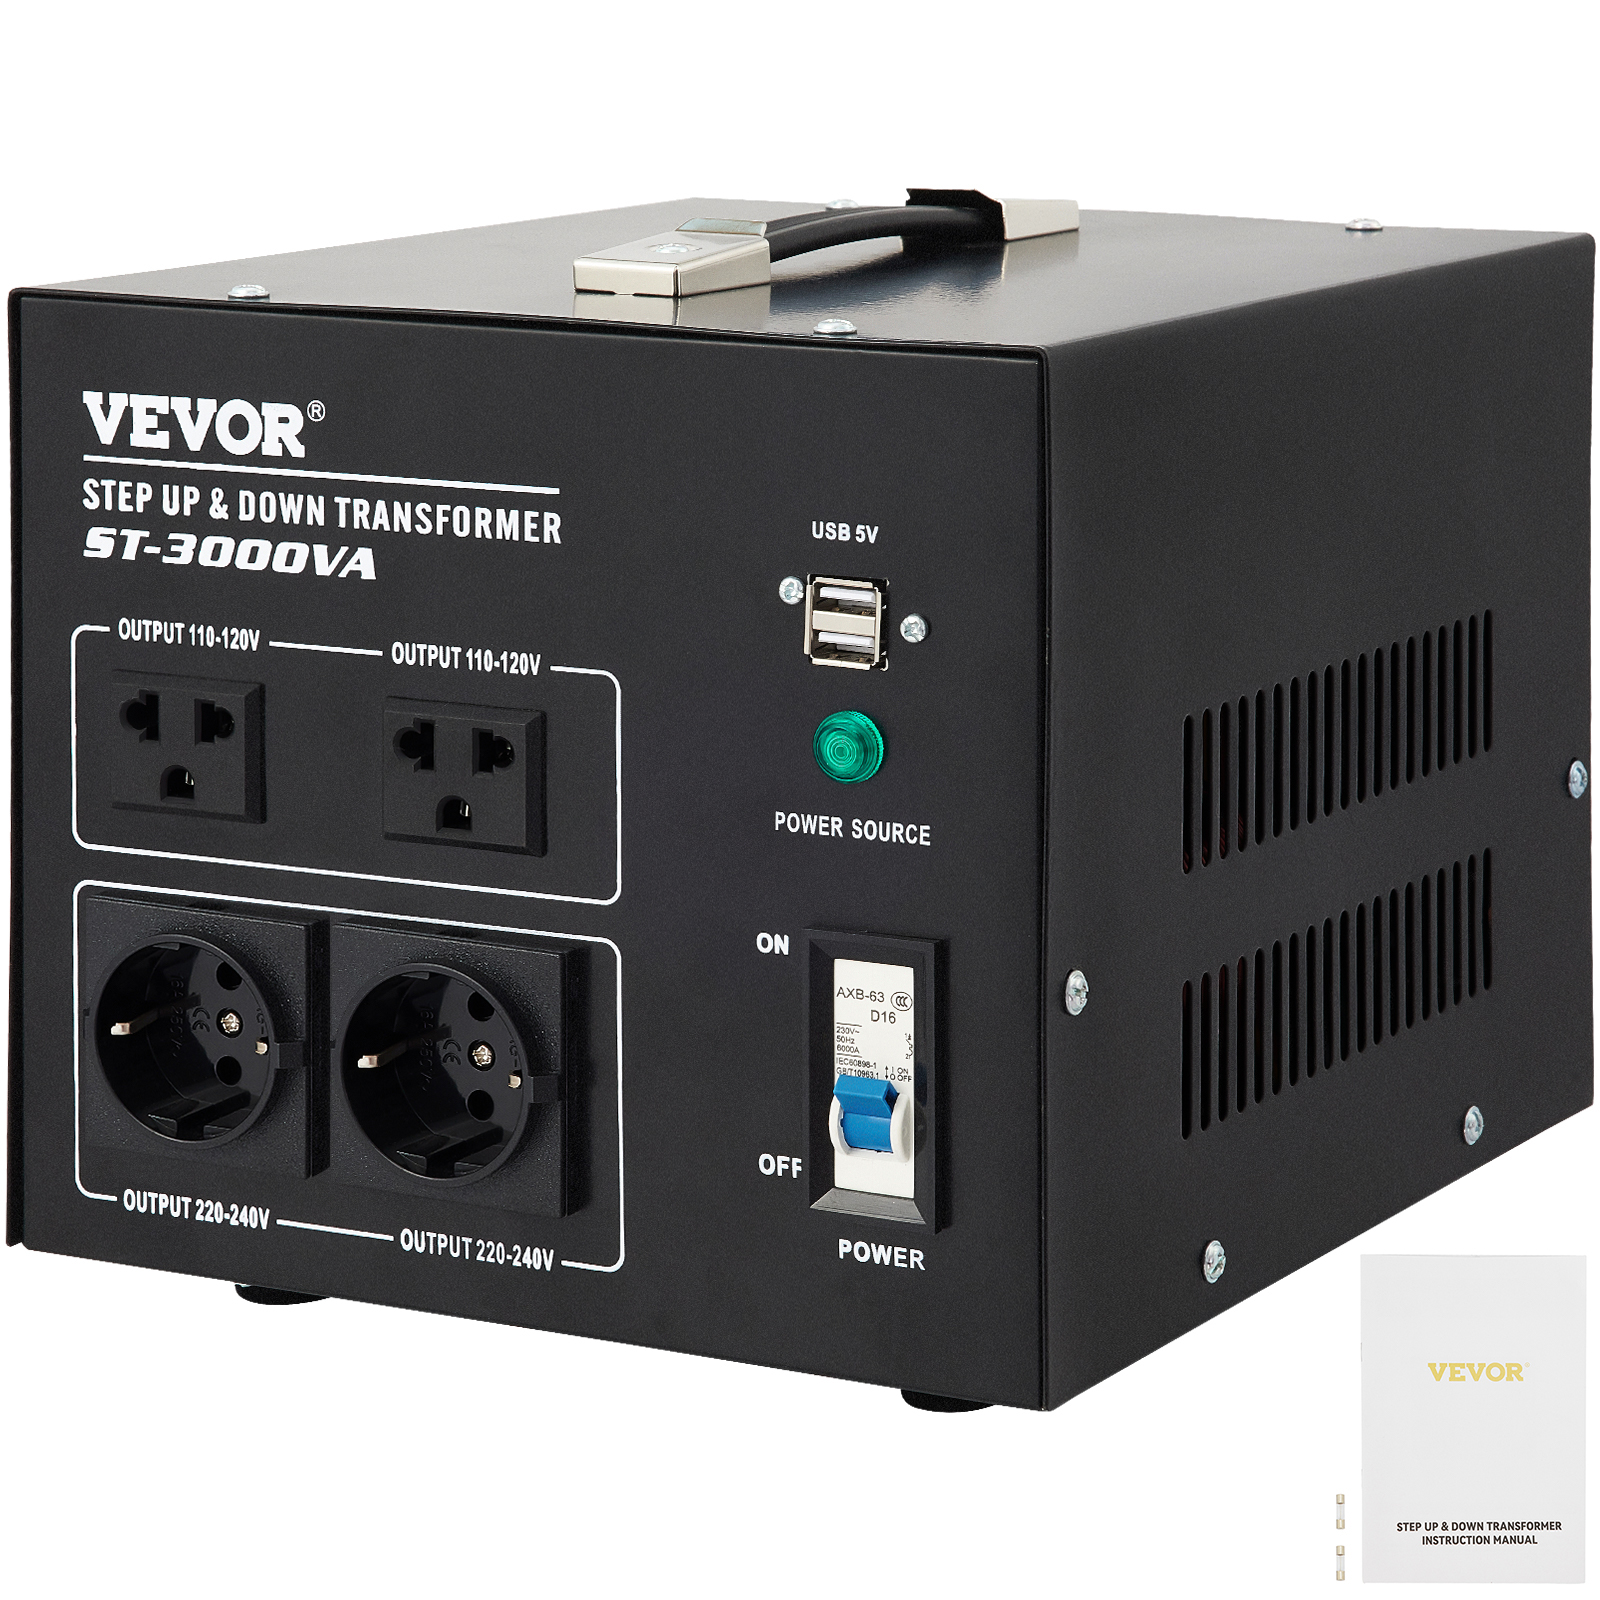 Adapter Strom 230V -> USB Buchse 5Volt #d010